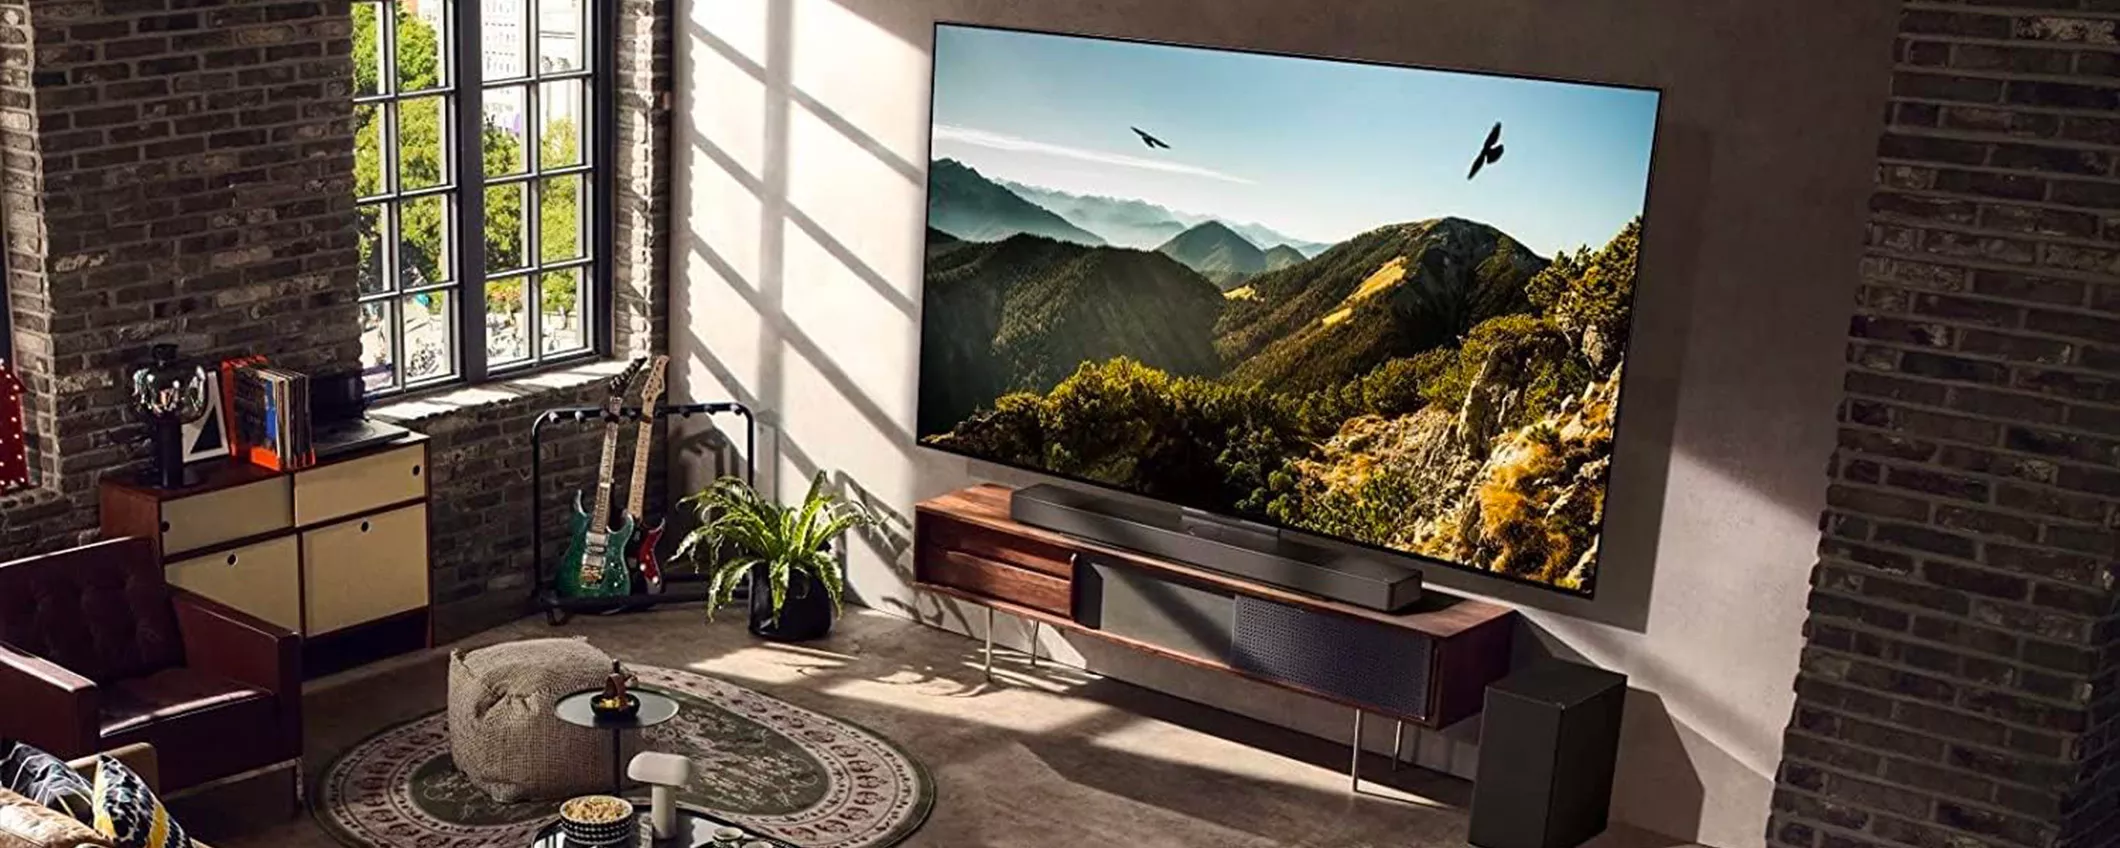 Smart TV LG OLED evo da 55 pollici in SUPER SCONTO su Amazon